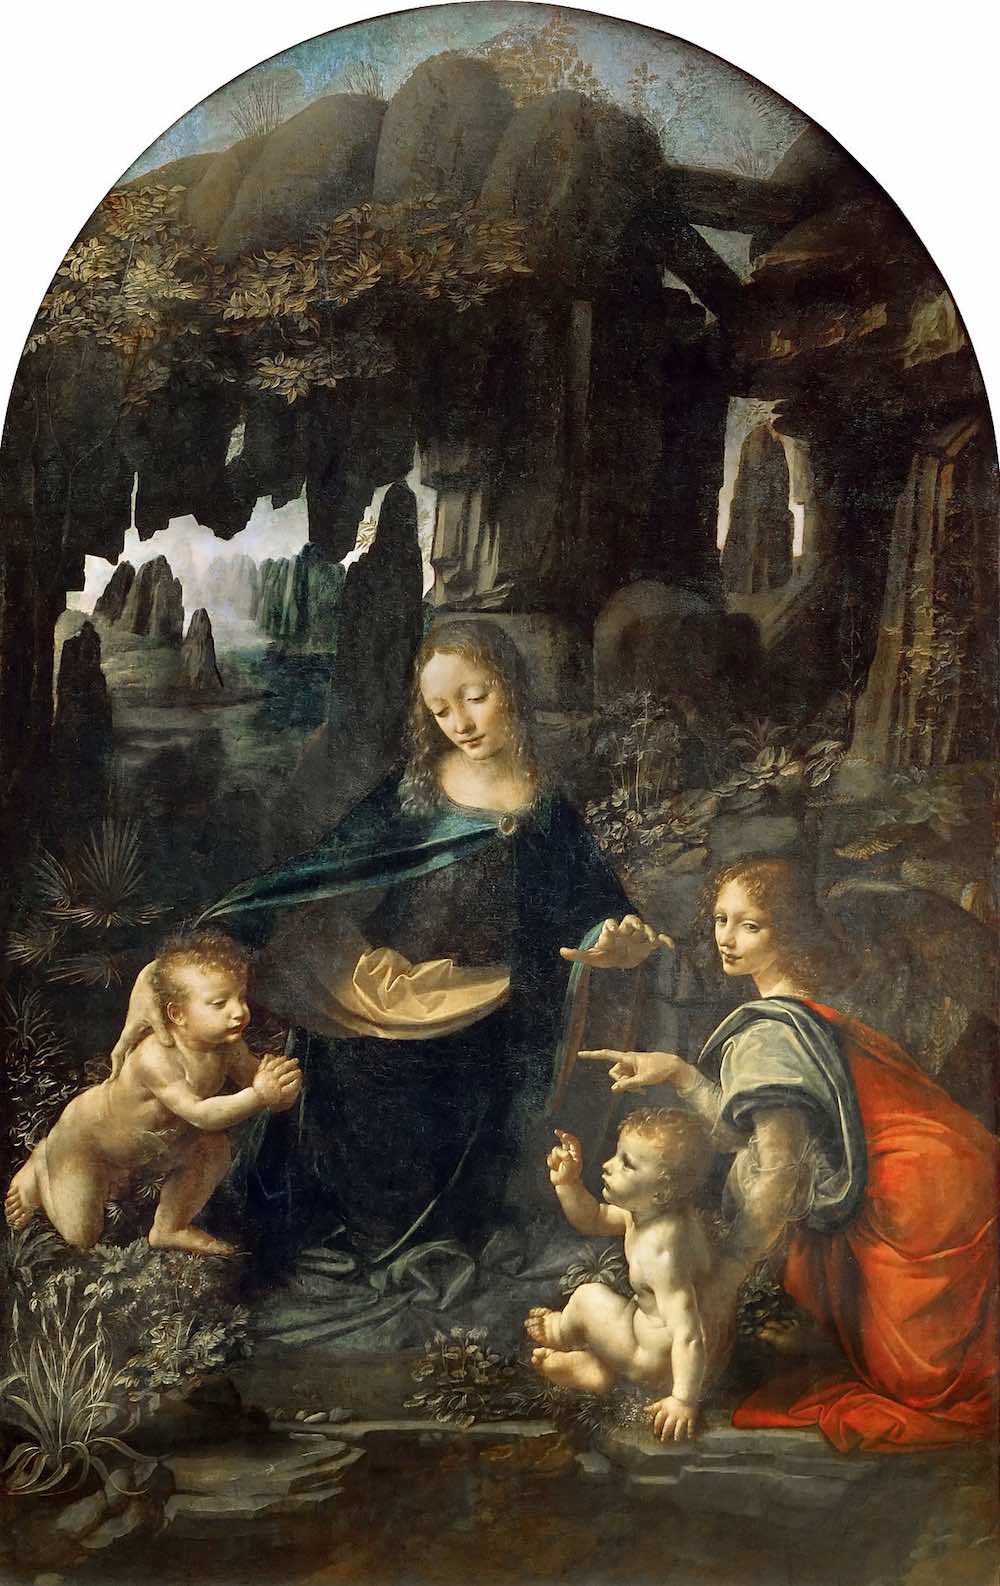 La Vergine delle Rocce di Leonardo da Vinci